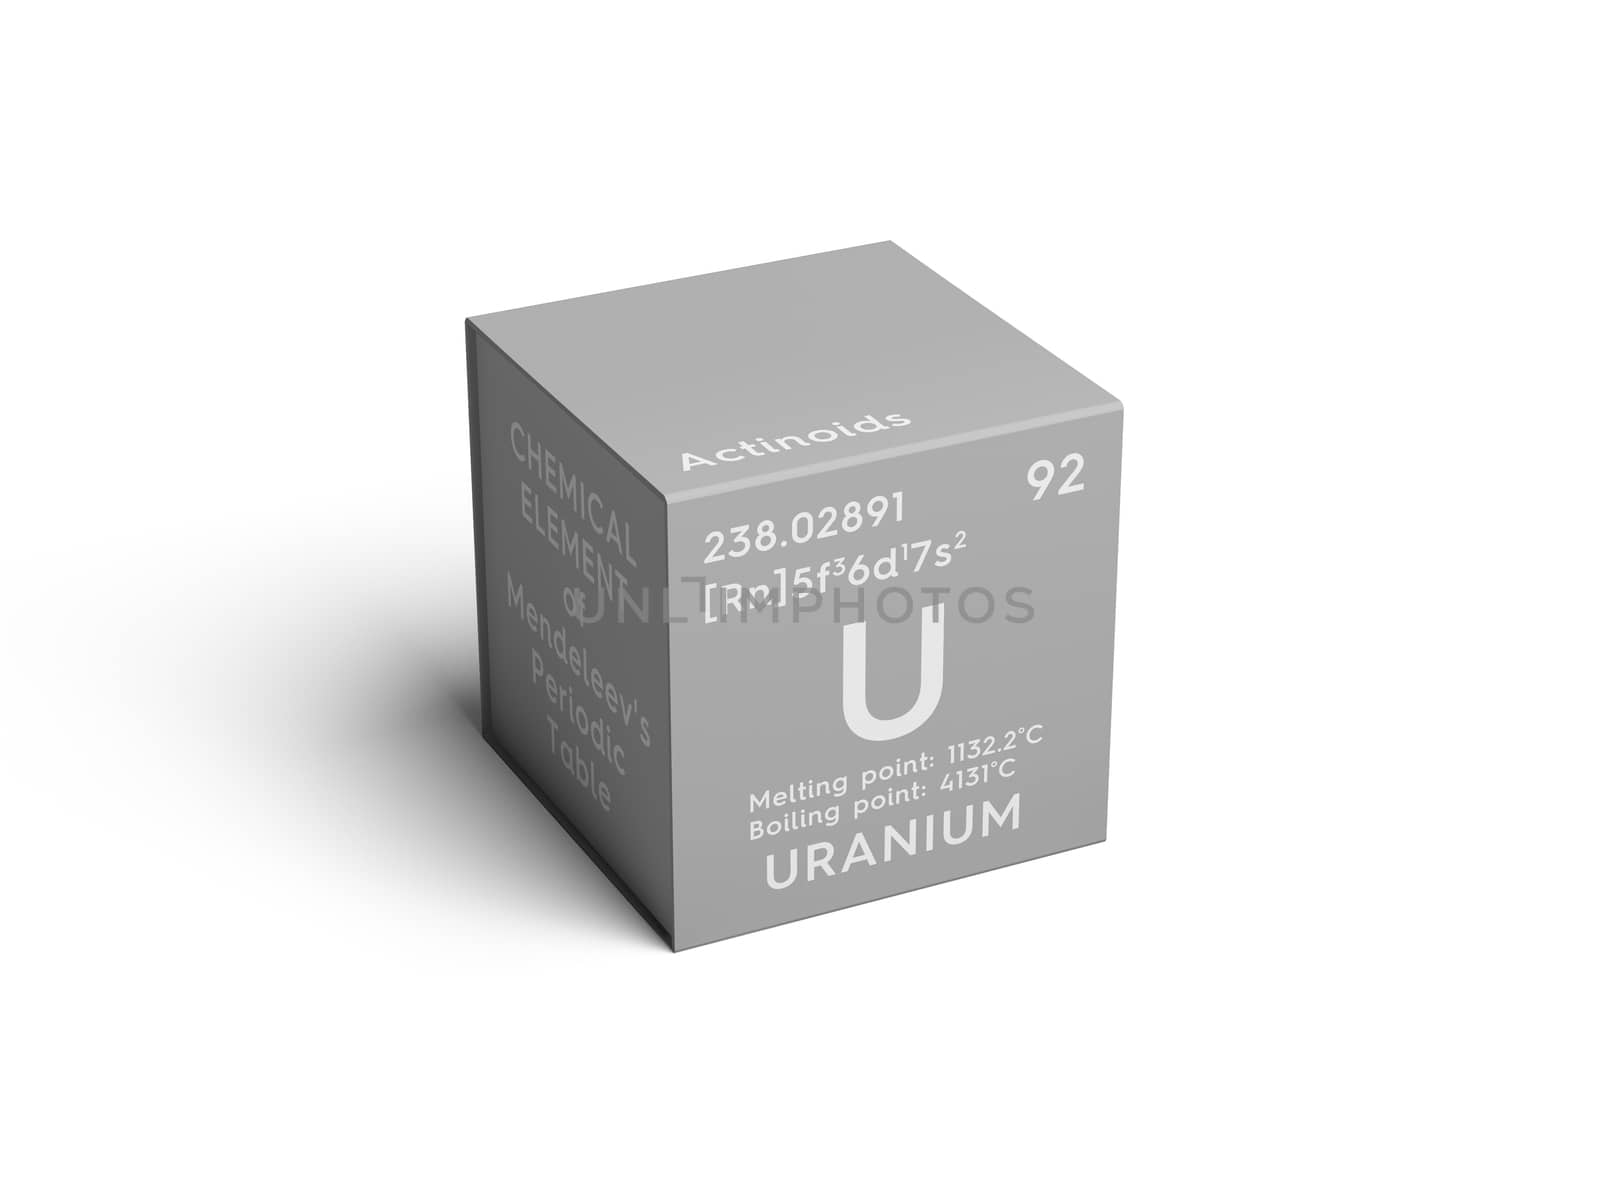 Uranium. Actinoids. Chemical Element of Mendeleev's Periodic Table. Uranium in square cube creative concept. 3D illustration.